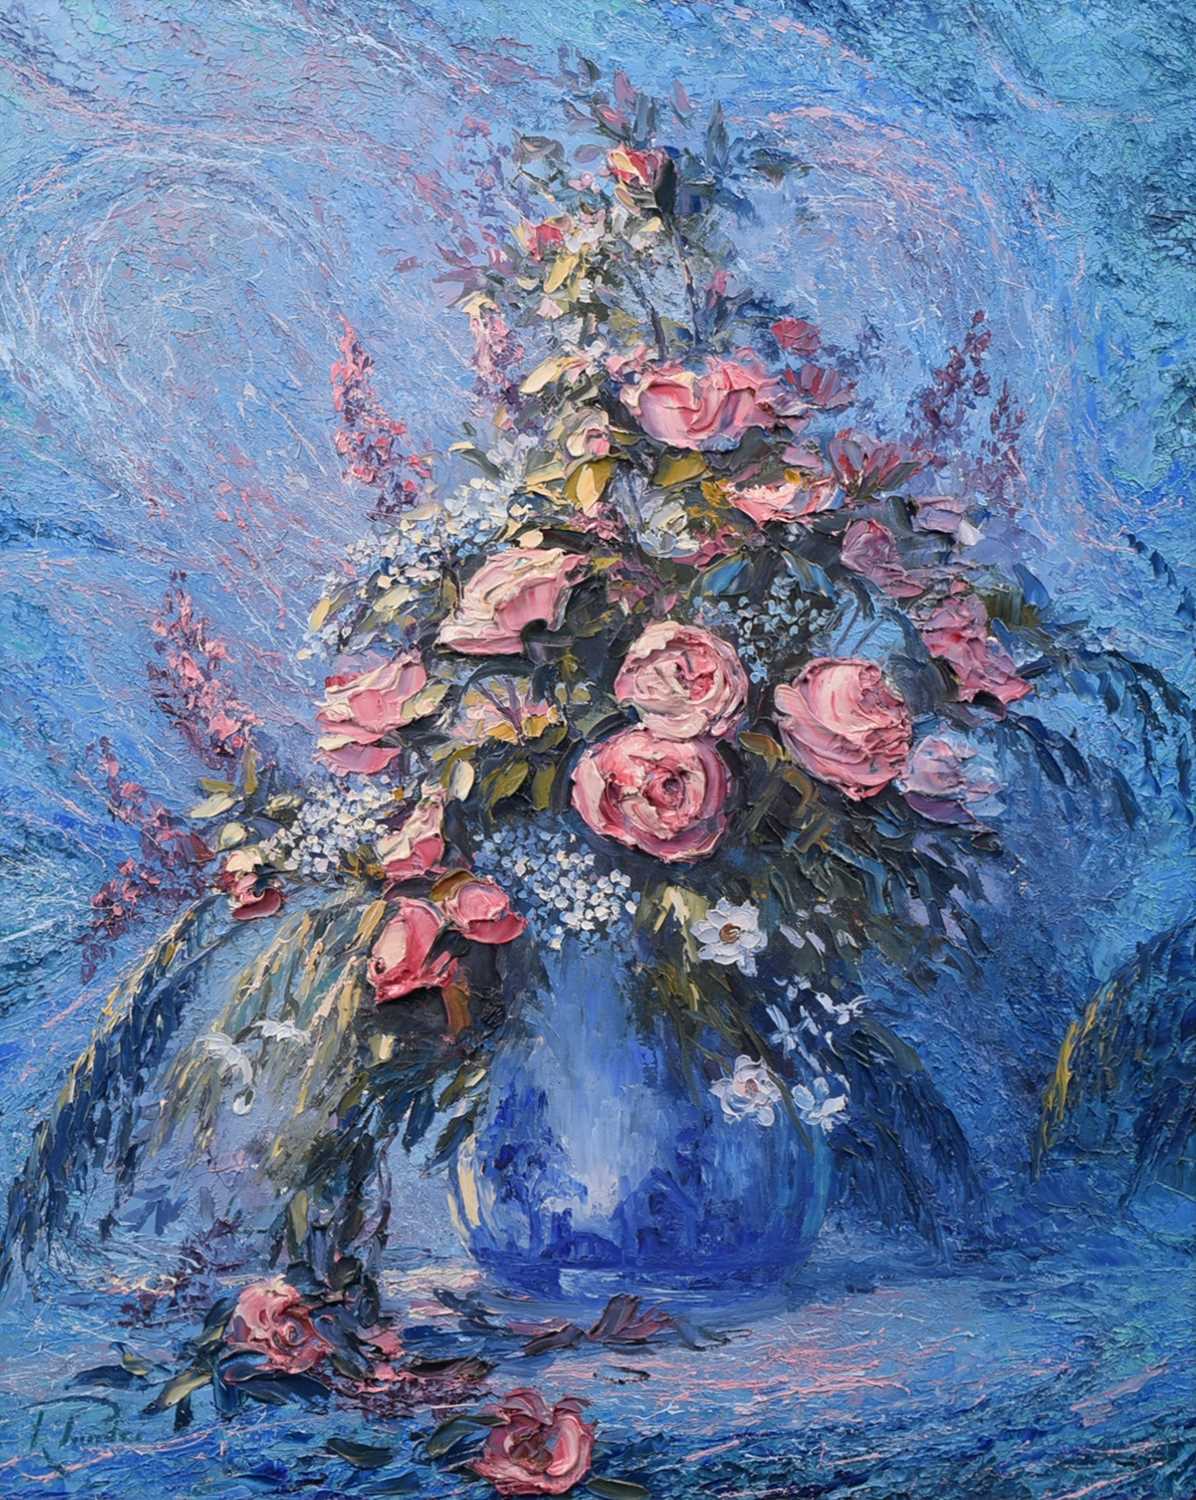 Richard W. Ponder (20th century) "Victorian Bouquet"